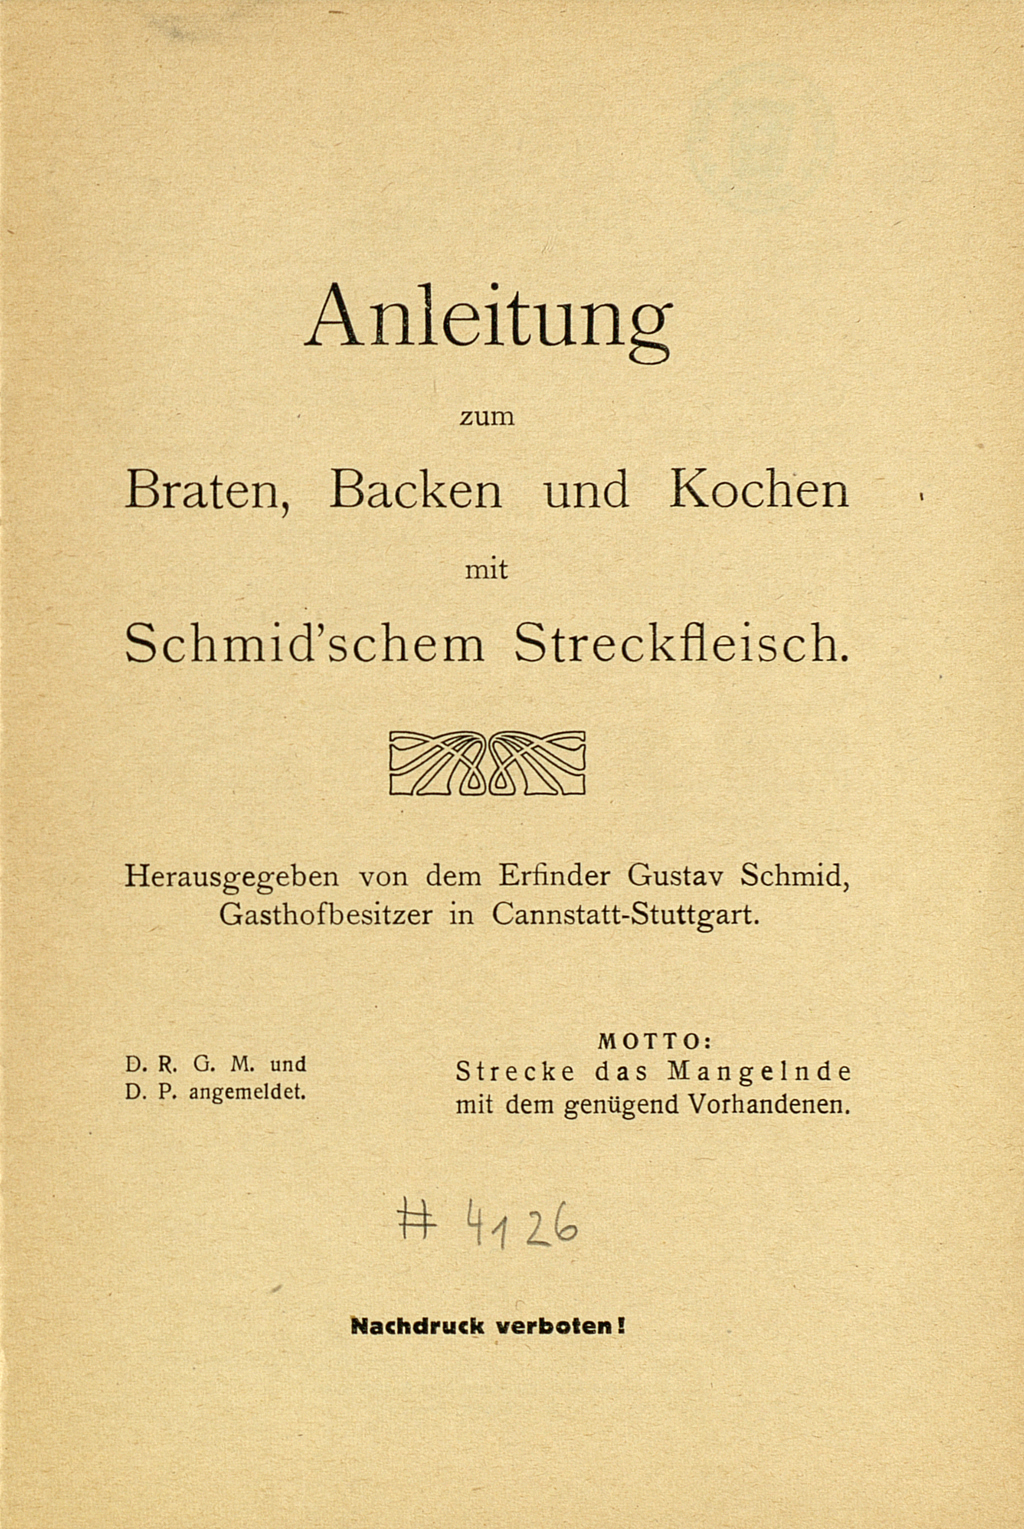 Titelblatt von "Anleitung zum Braten, Backen und Kochen mit Schmid‘schem Streckfleisch."